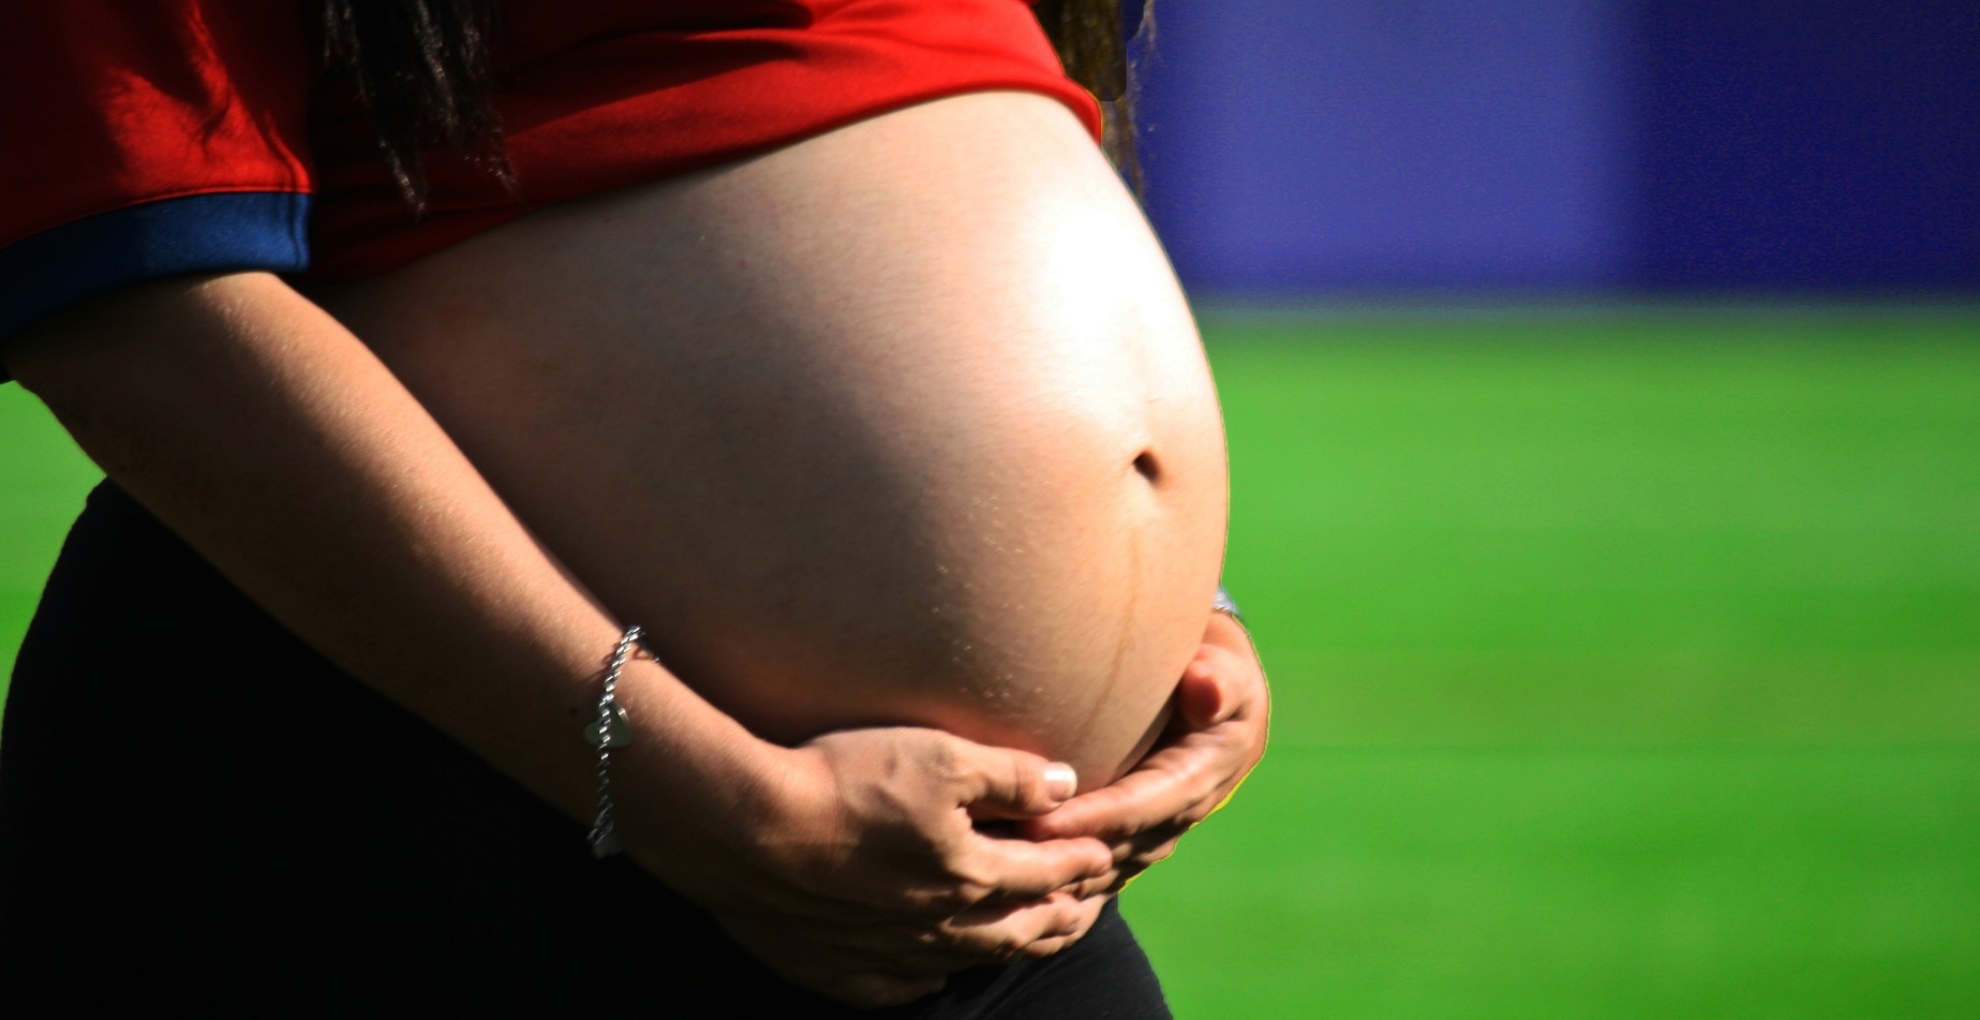 Pregnancy Care Tips: प्रेग्नेंसी में ज्यादा मीठा खाने से करें परहेज, वरना हो सकती हैं कई परेशानियों का शिकार